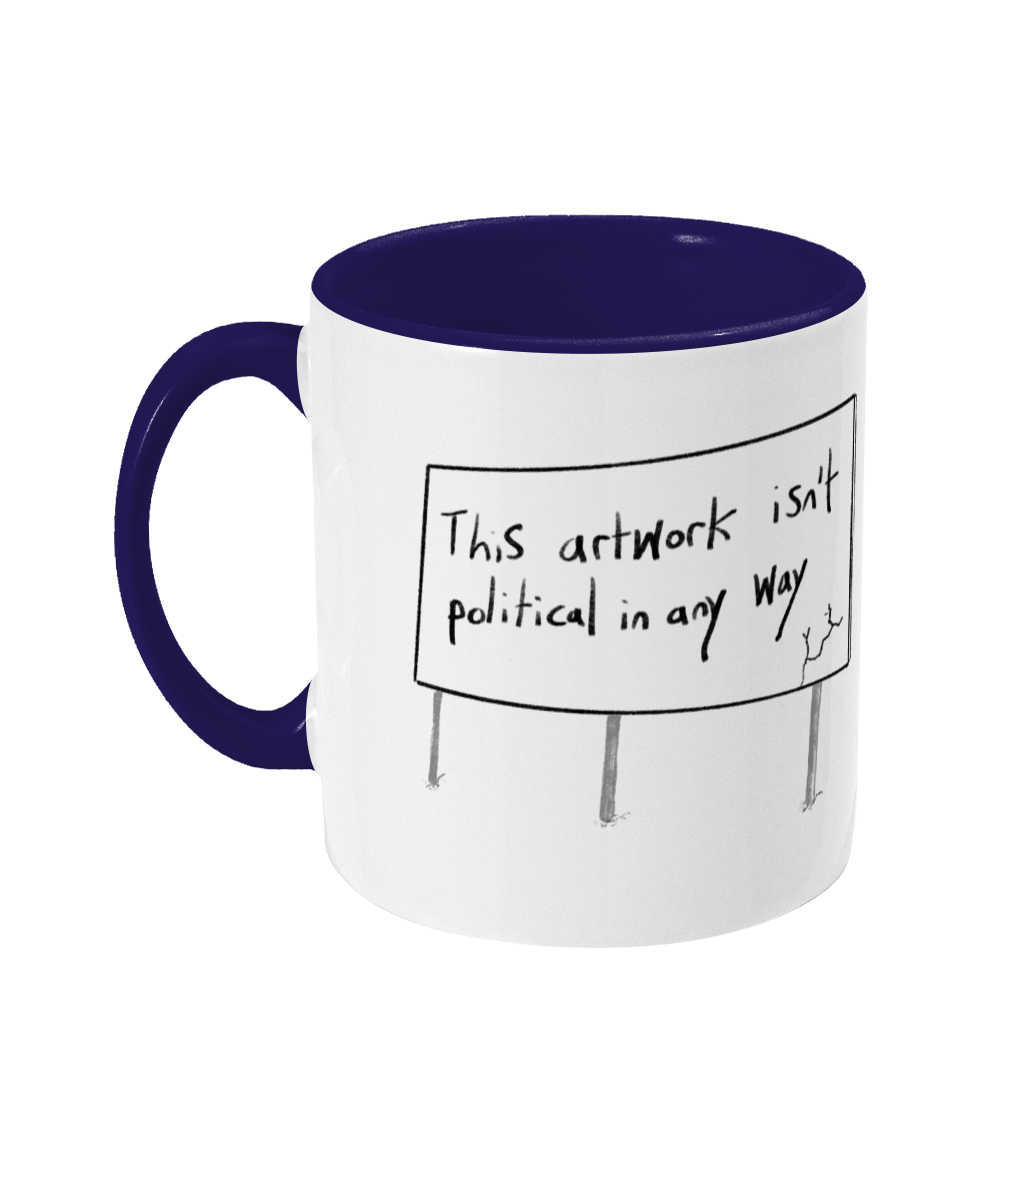 A non-political mug